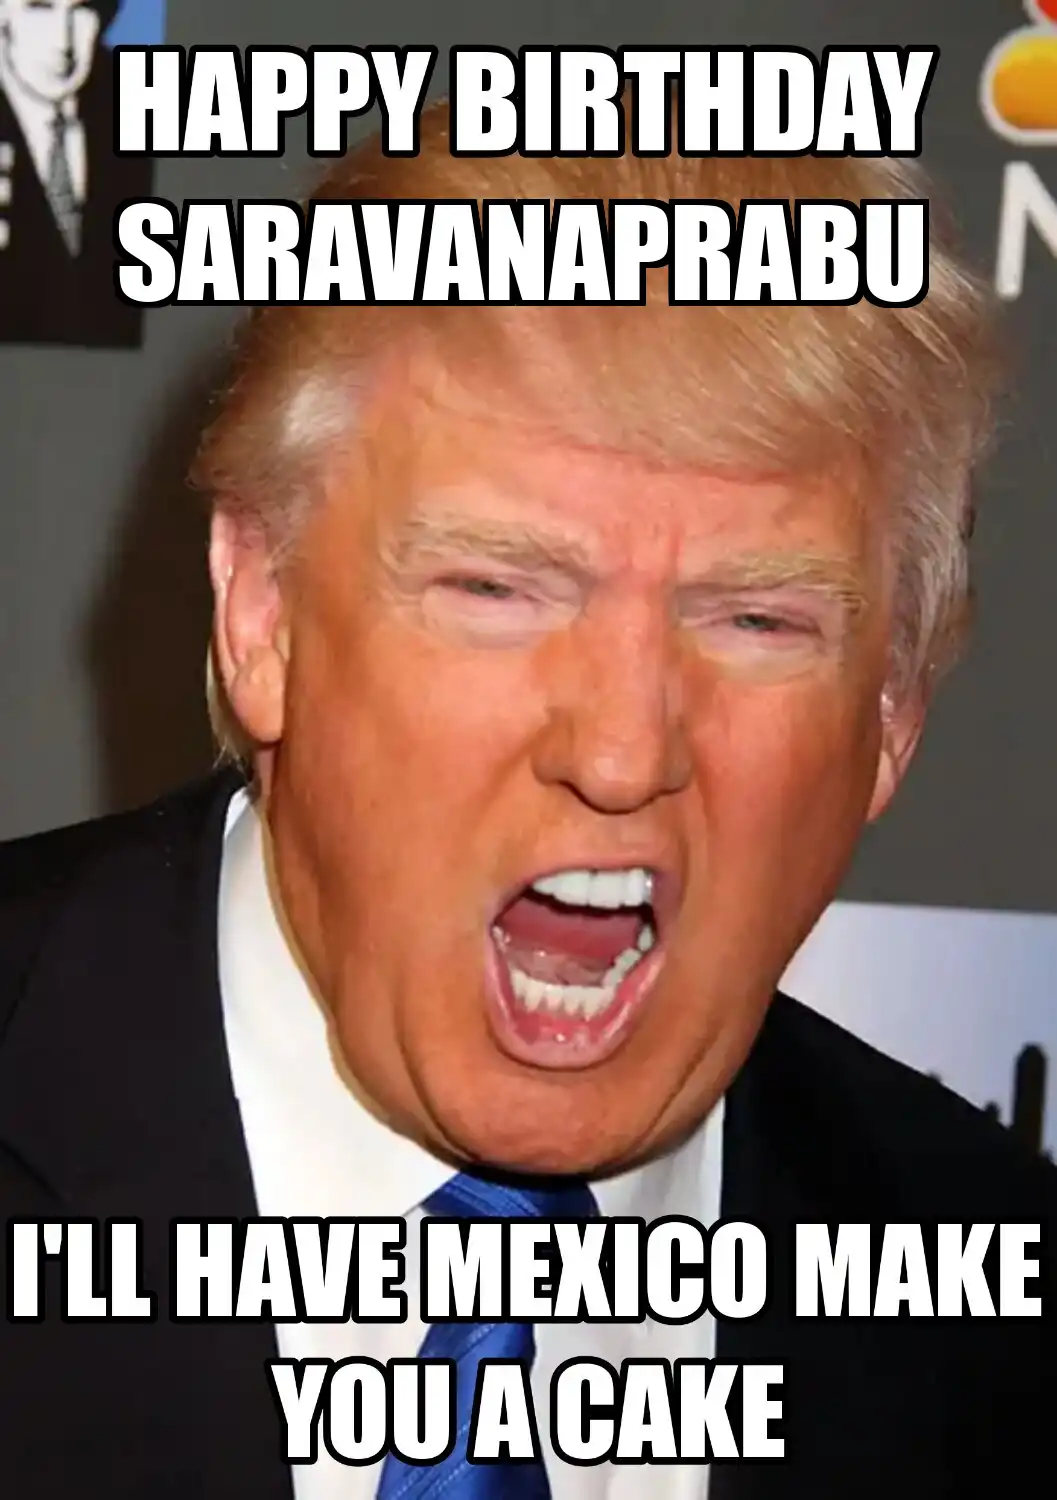 Happy Birthday Saravanaprabu Mexico Make You A Cake Meme